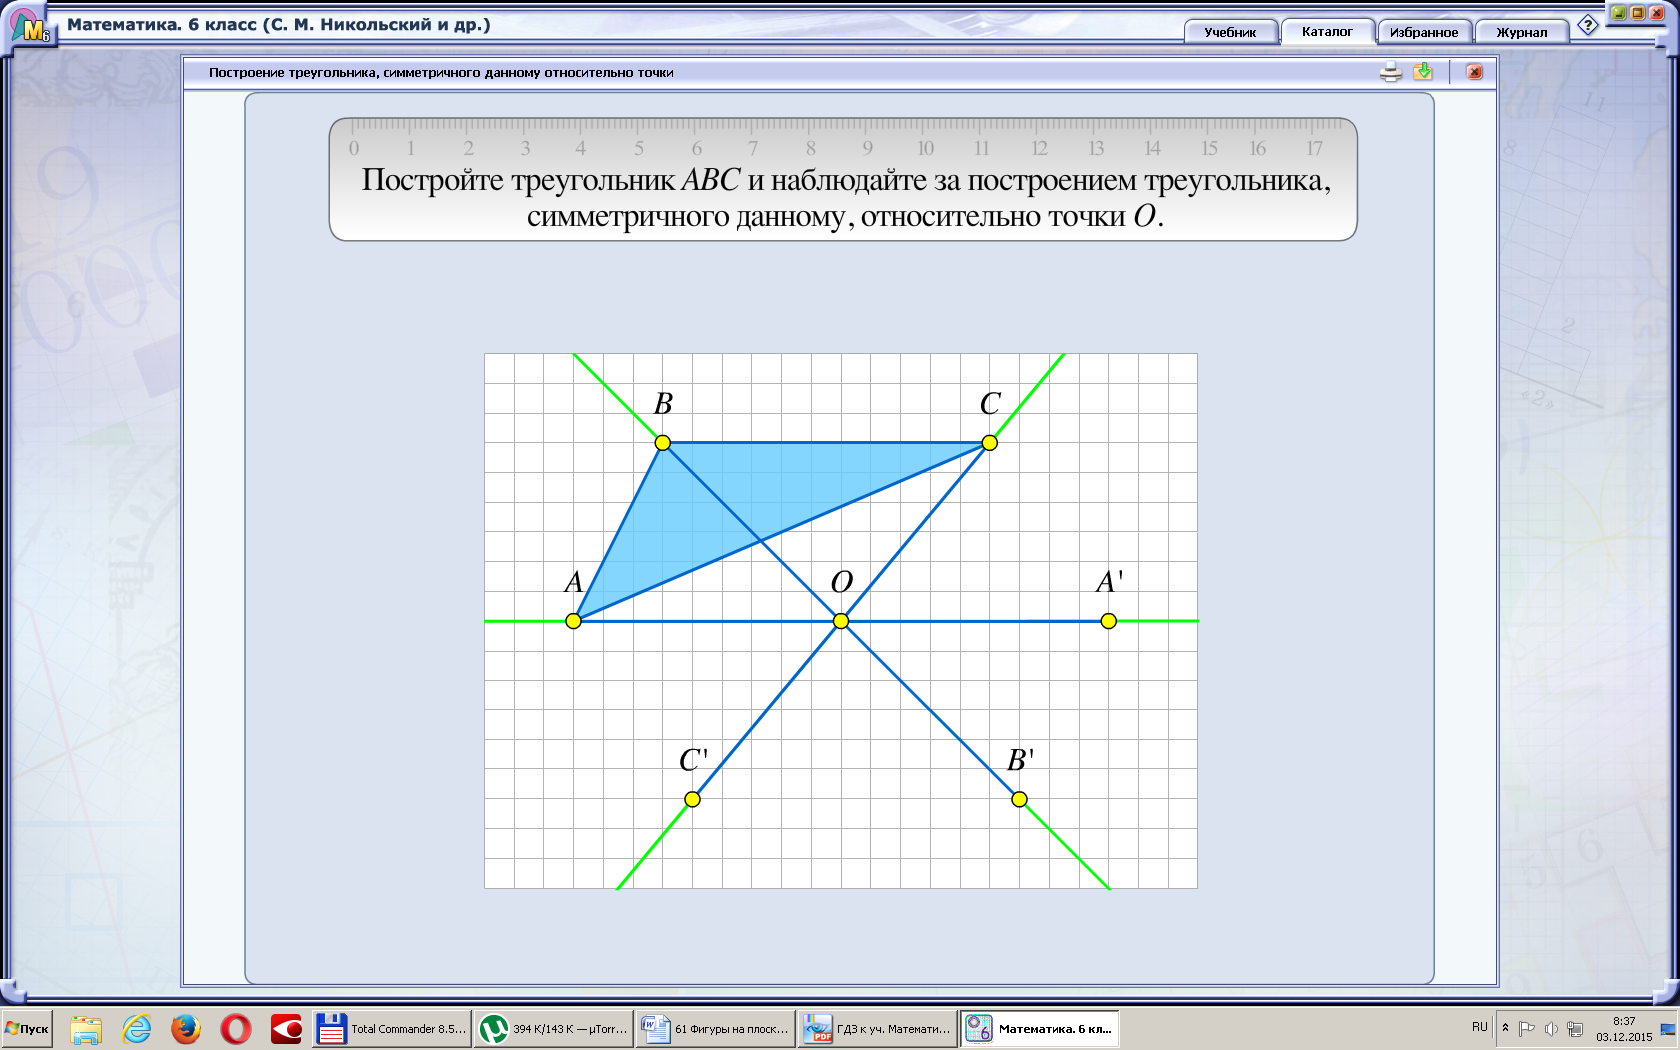 Конспект урока по математике на тему Фигуры на плоскости, симметричные относительно точки (6 класс)